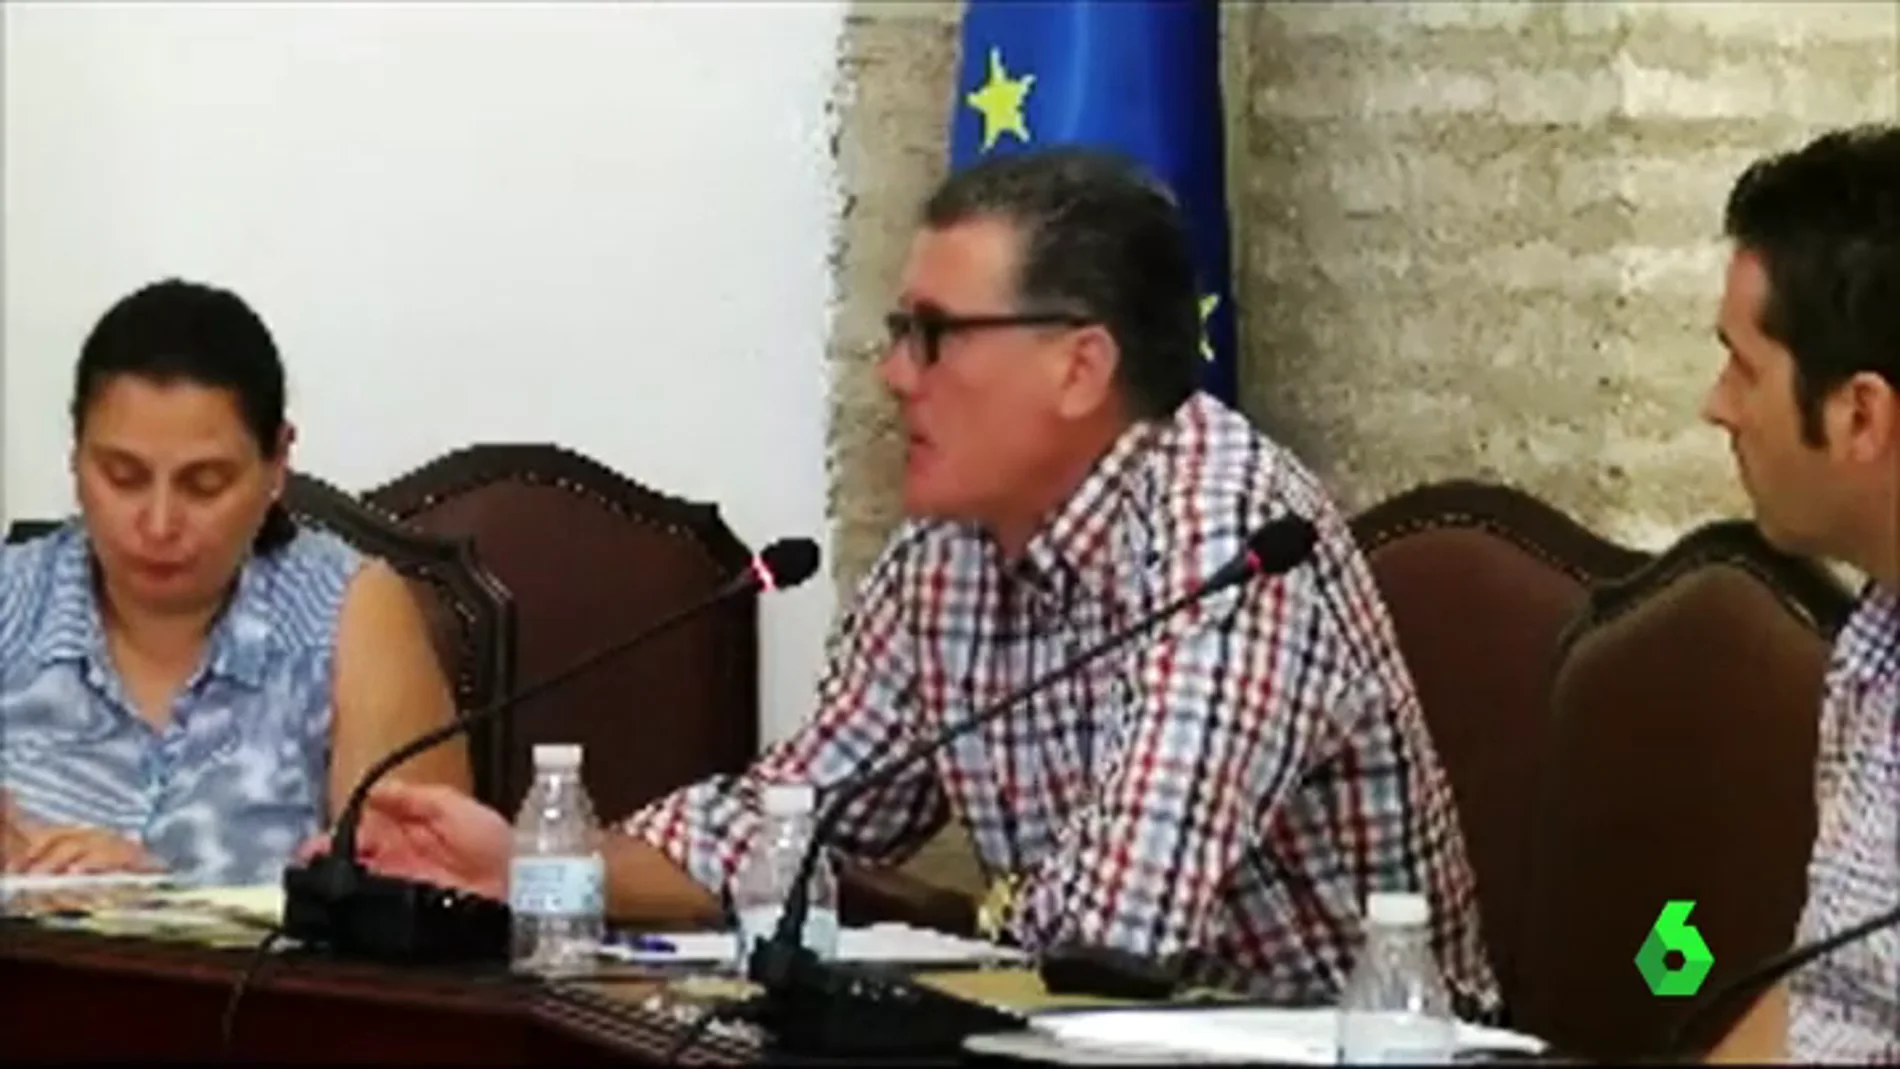 Polémicas declaraciones de un concejal socialista de La Rambla, Córdoba